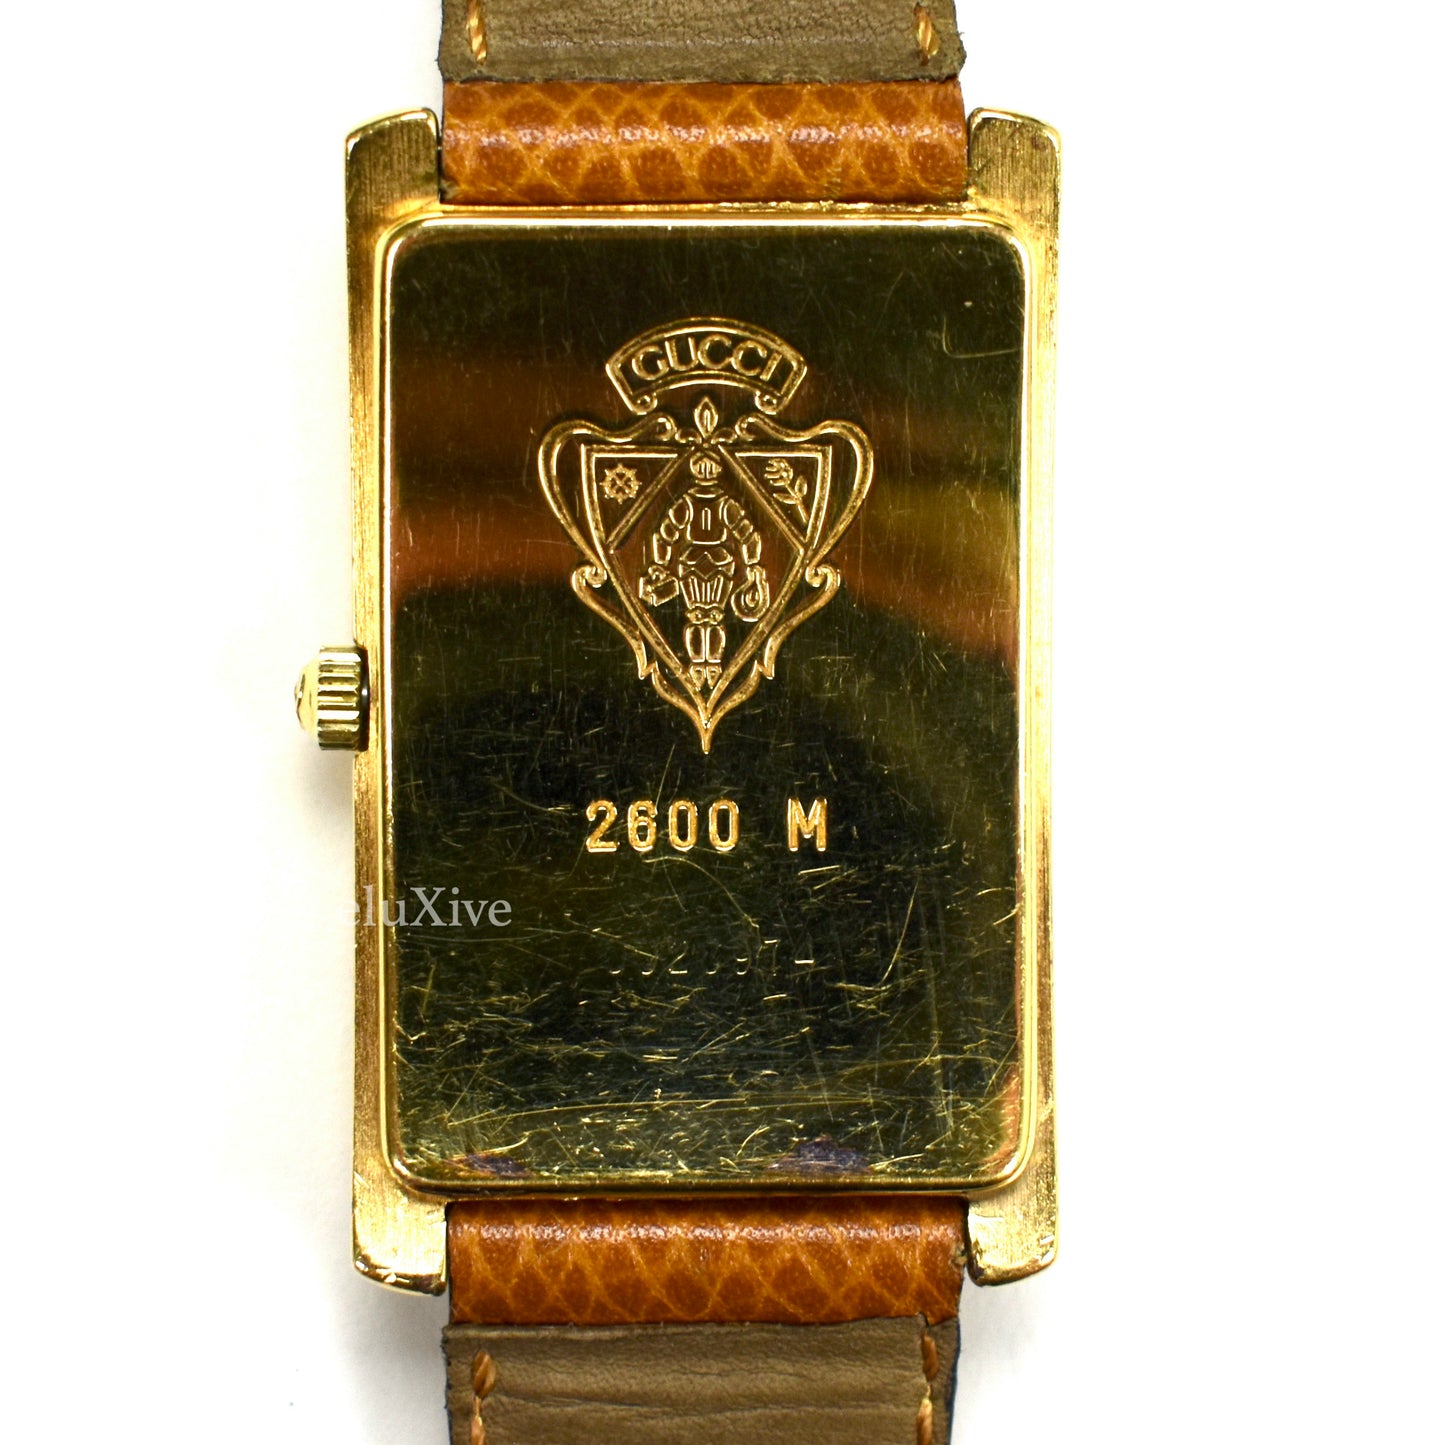 Gucci - 2600M Gold Web Stripe Dial Tank Watch